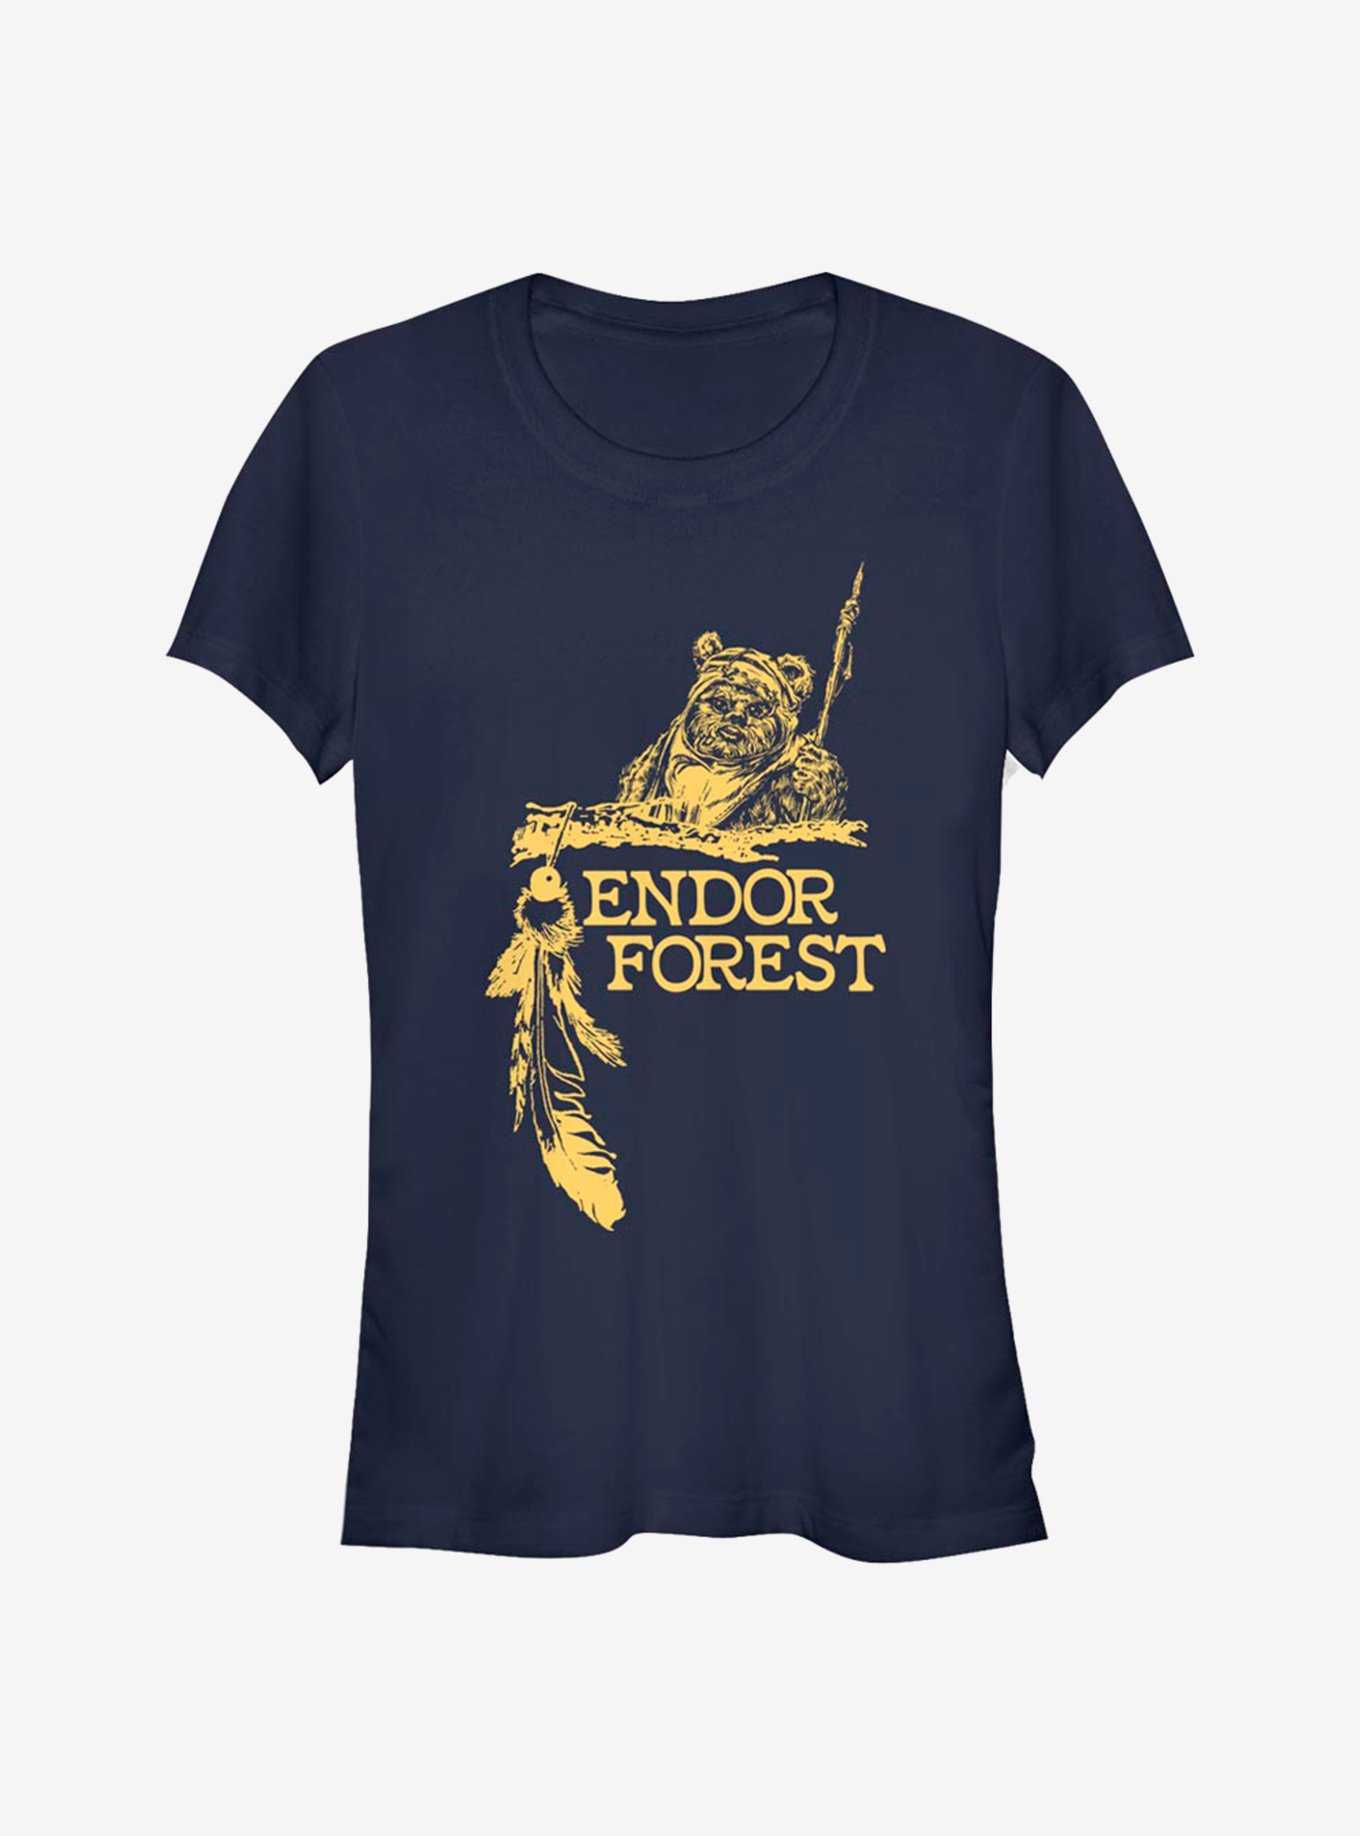 Star Wars Endor Forest Girls T-Shirt, , hi-res